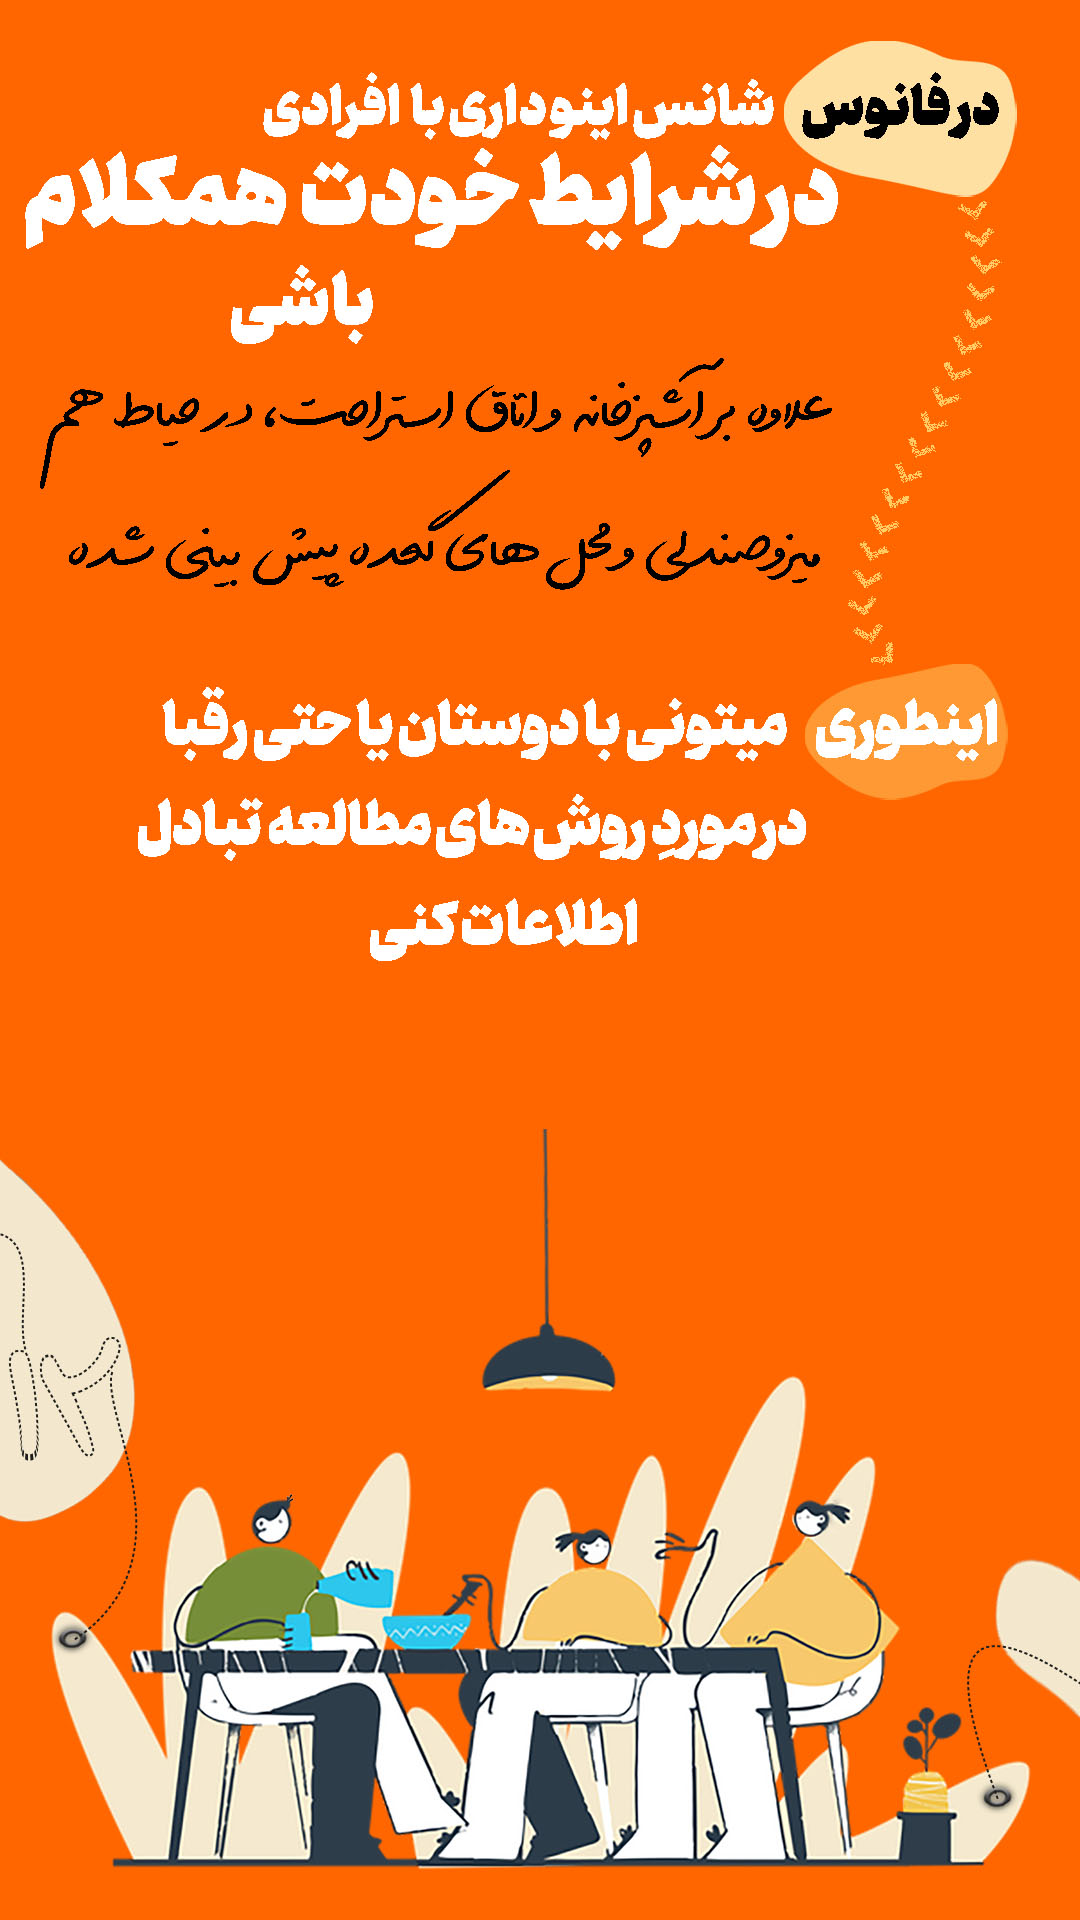 معرفی کمپ مطالعاتی شیراز12